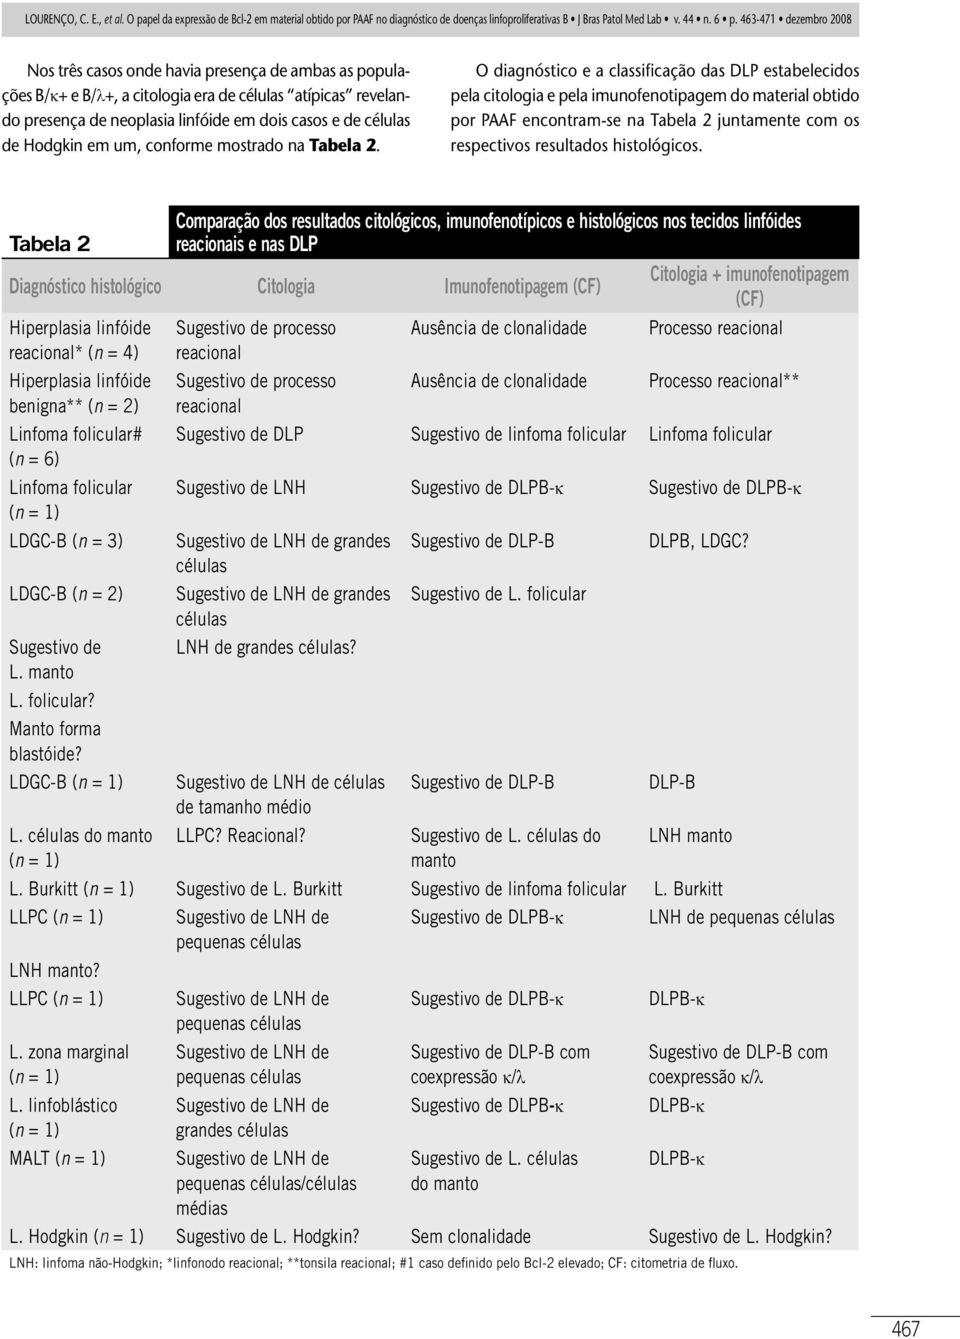 O diagnóstico e a classificação das DLP estabelecidos pela citologia e pela imunofenotipagem do material obtido por PAAF encontram-se na Tabela 2 juntamente com os respectivos resultados histológicos.